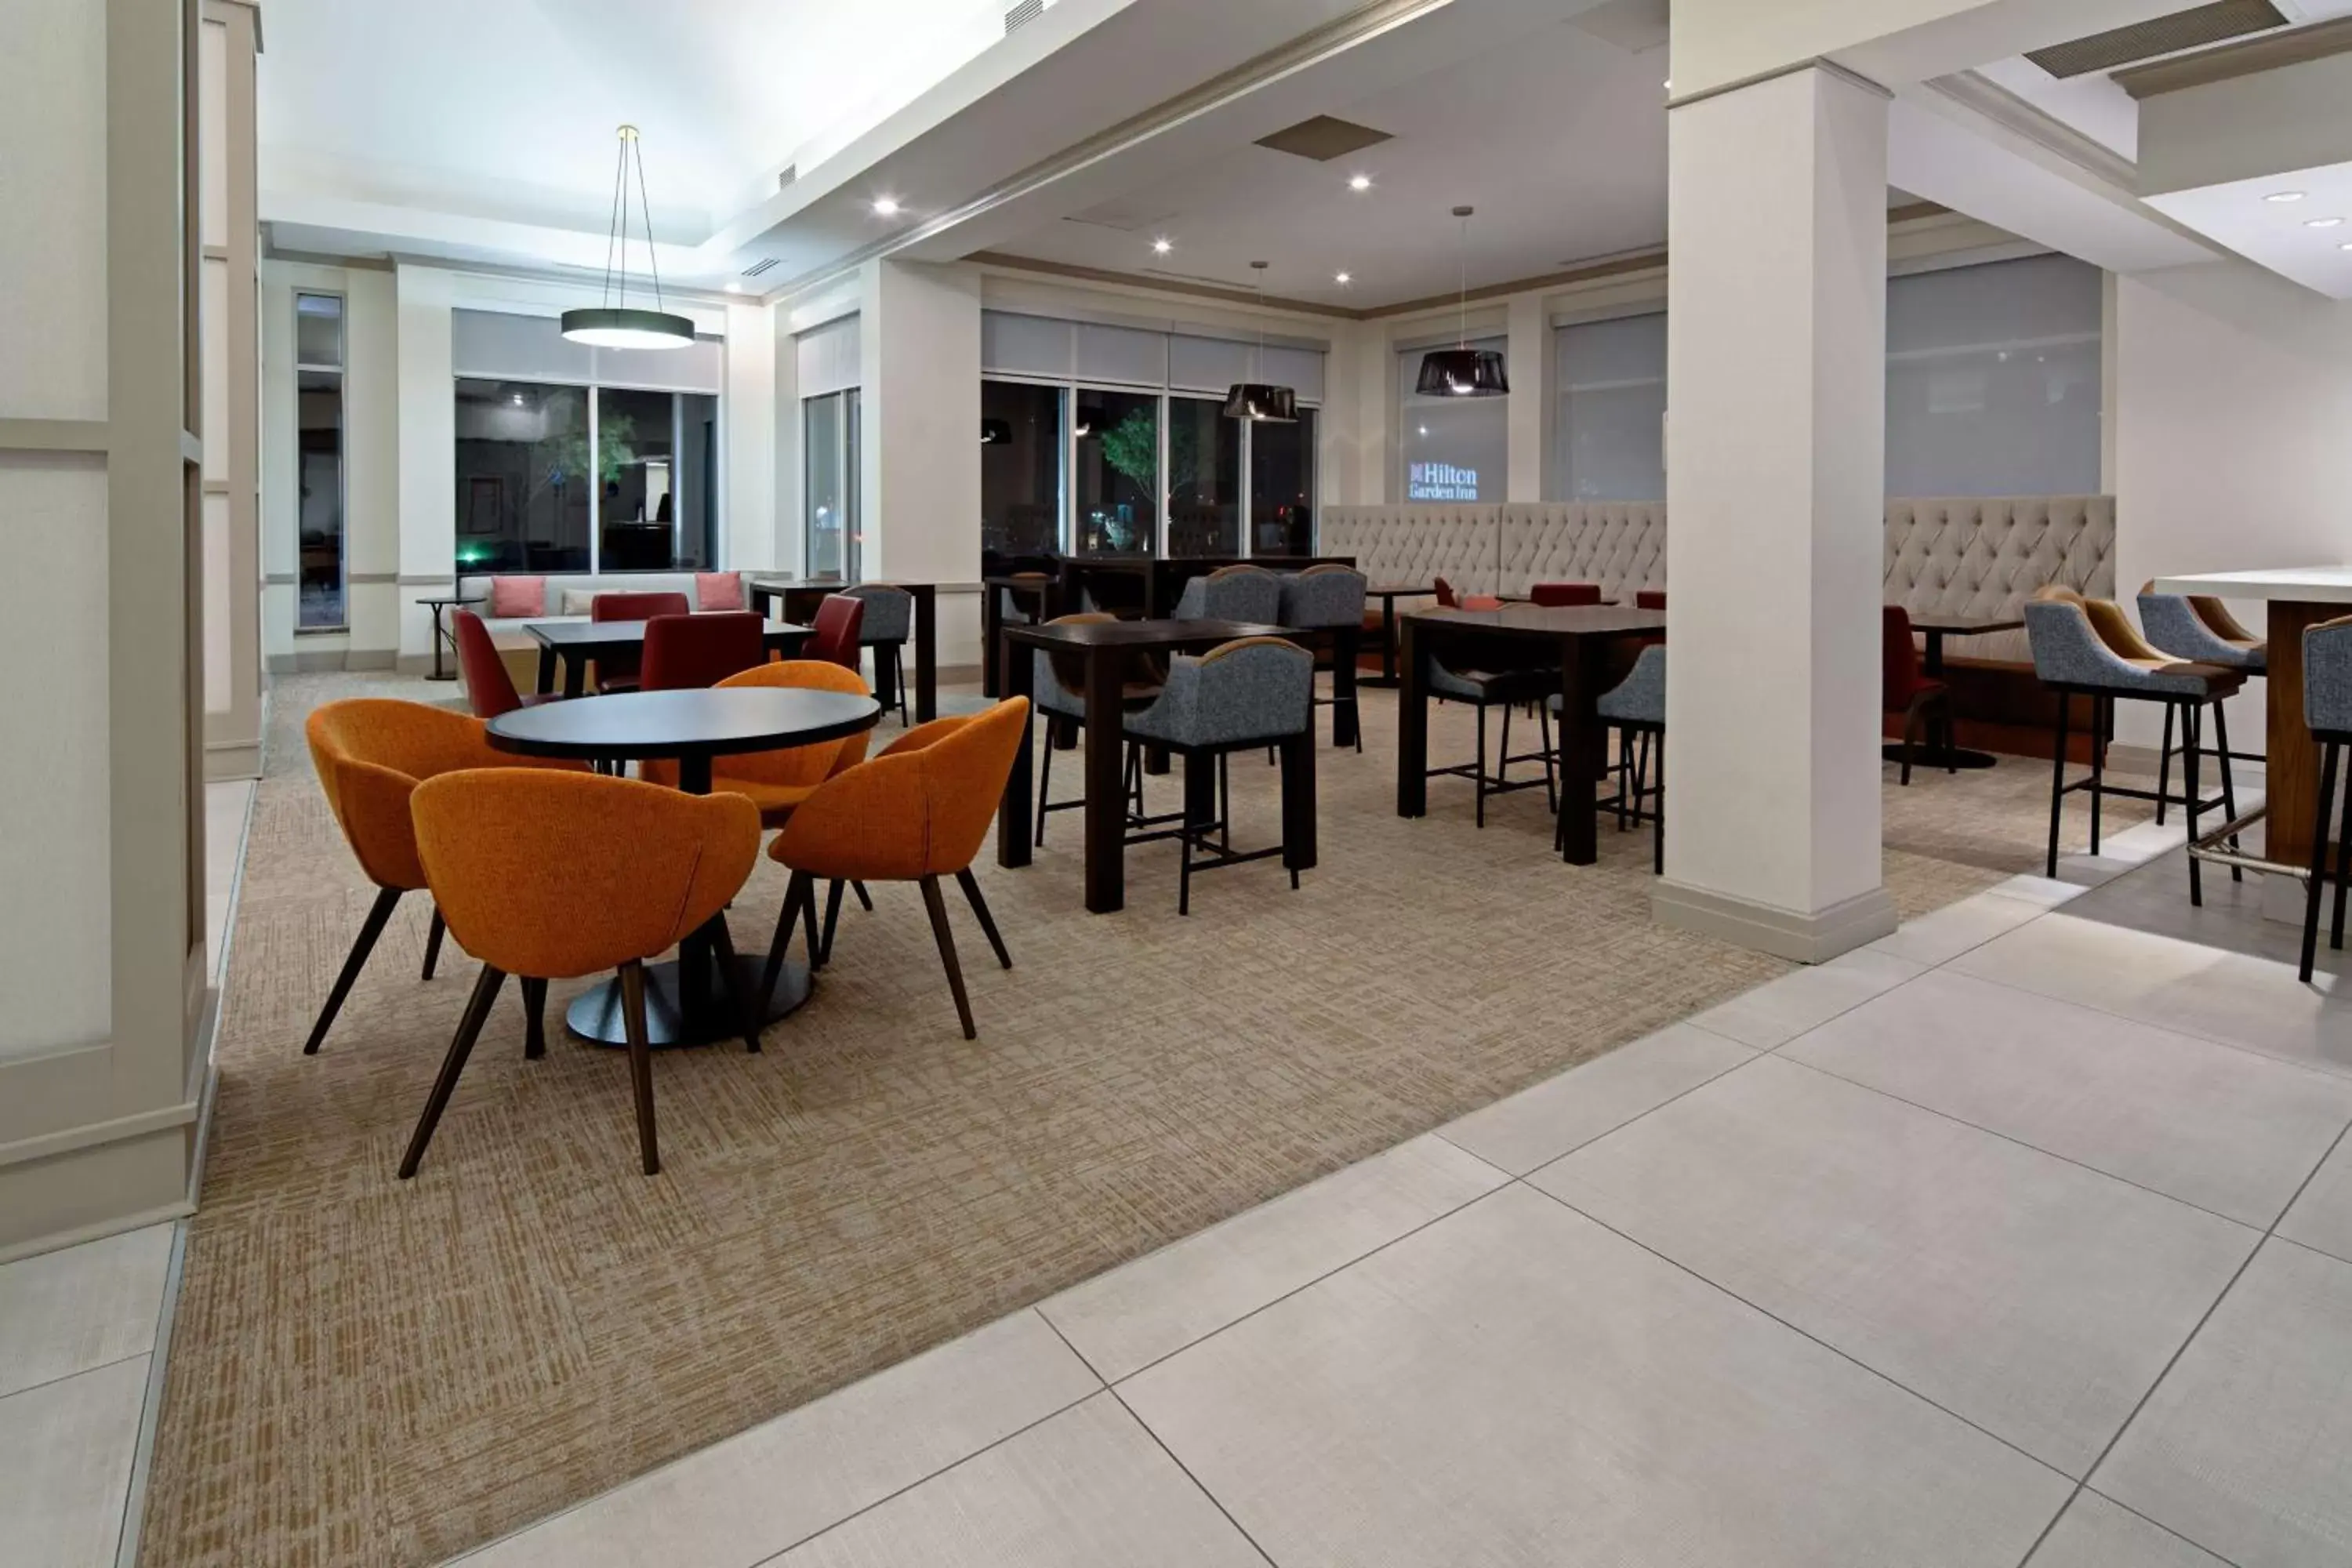 Lobby or reception in Hilton Garden Inn Albuquerque Airport